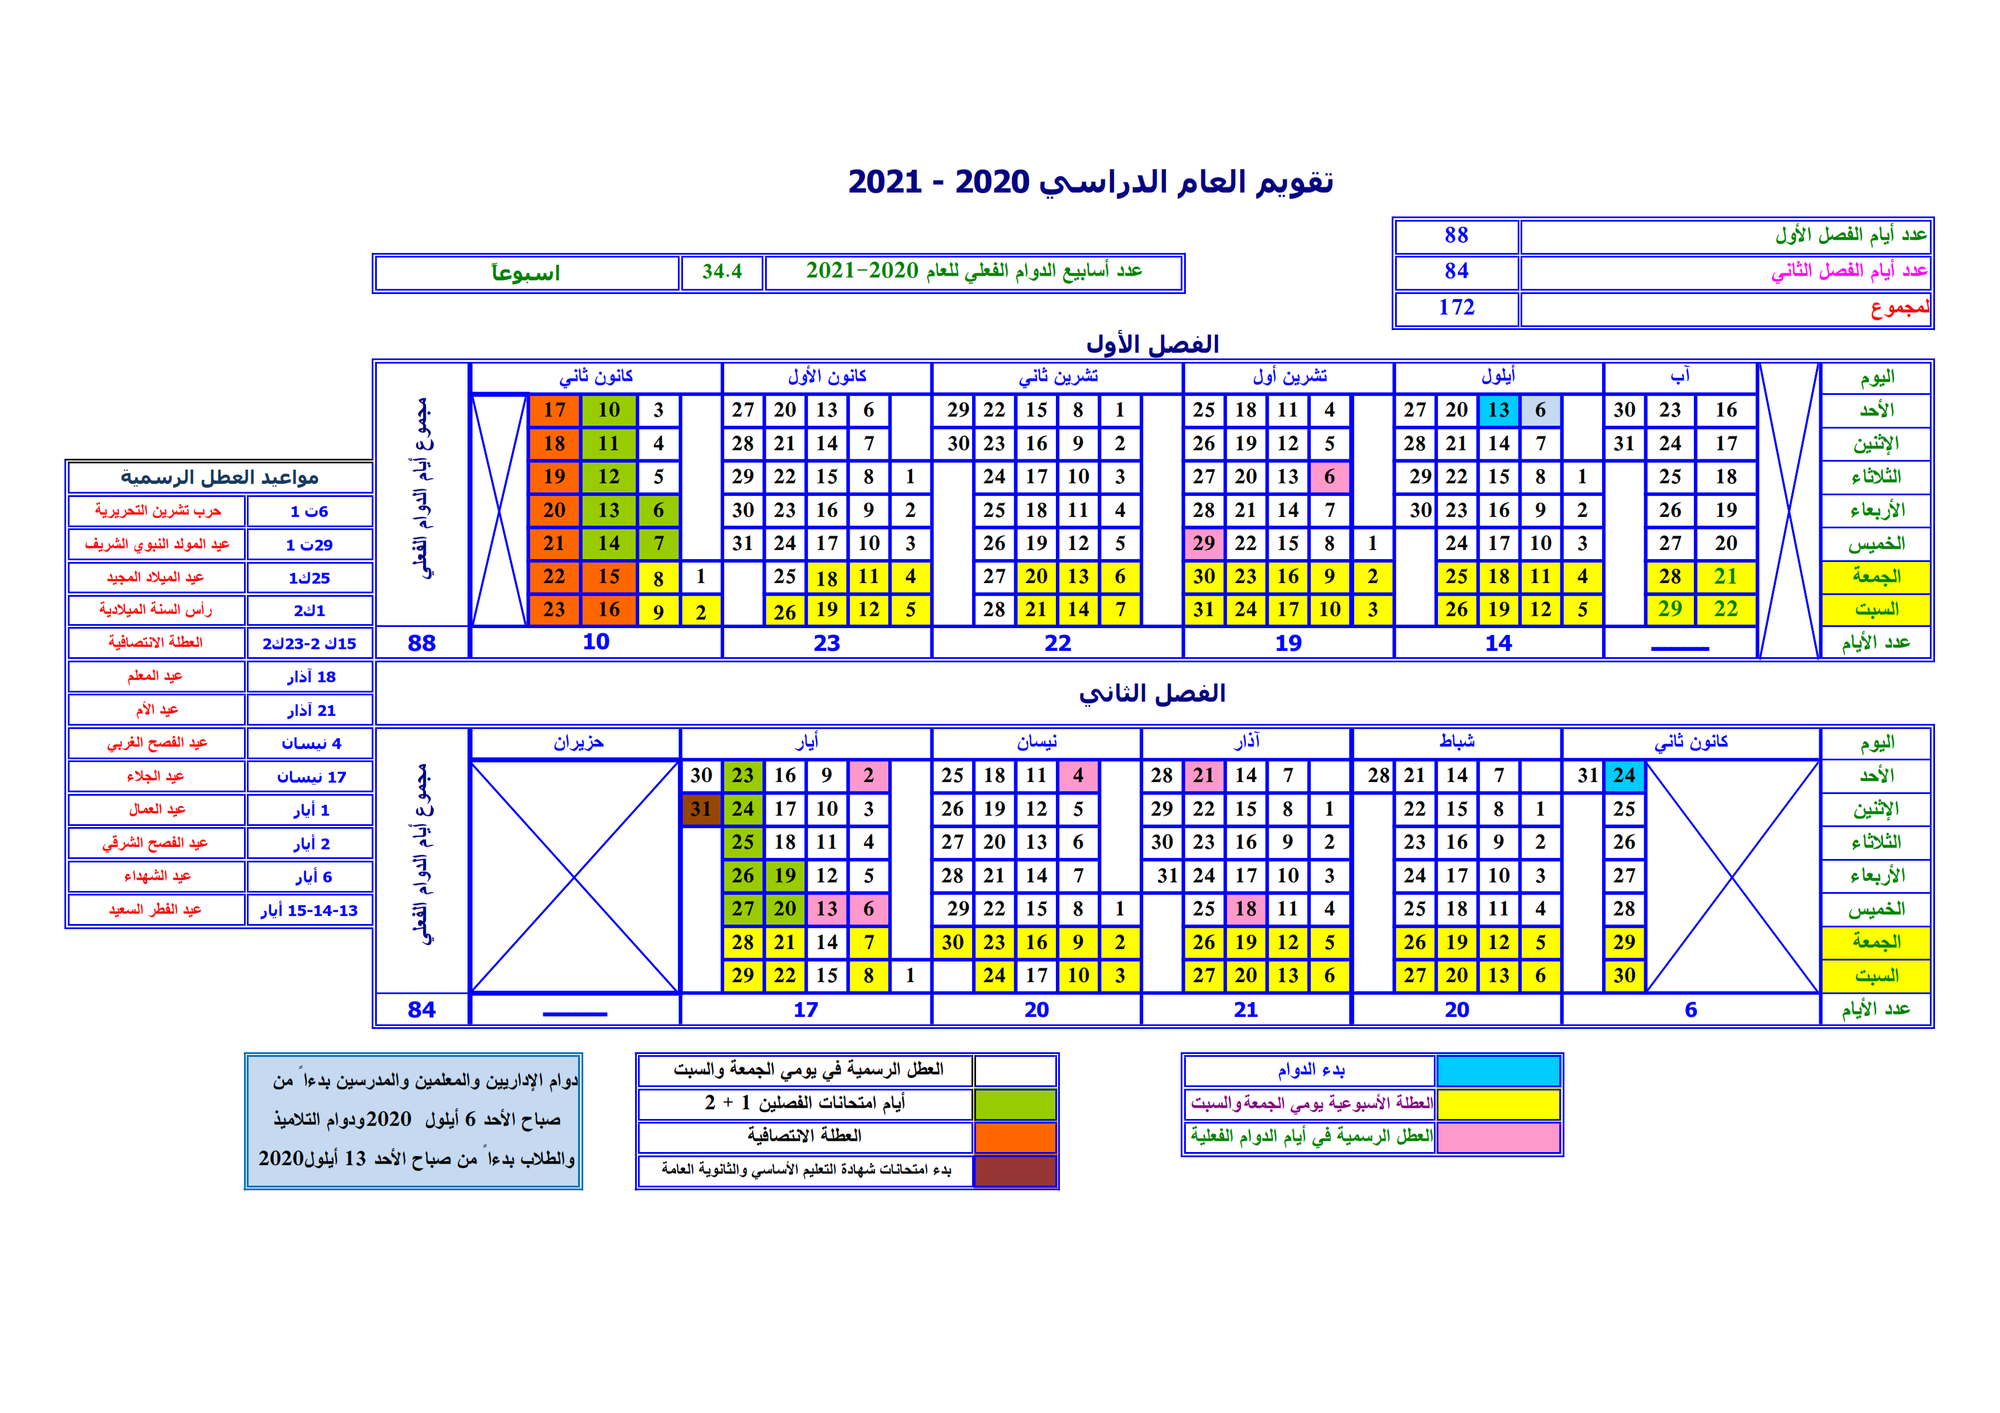 وزارة التربية تصدر تقويم العام الدراسي 2020 2021